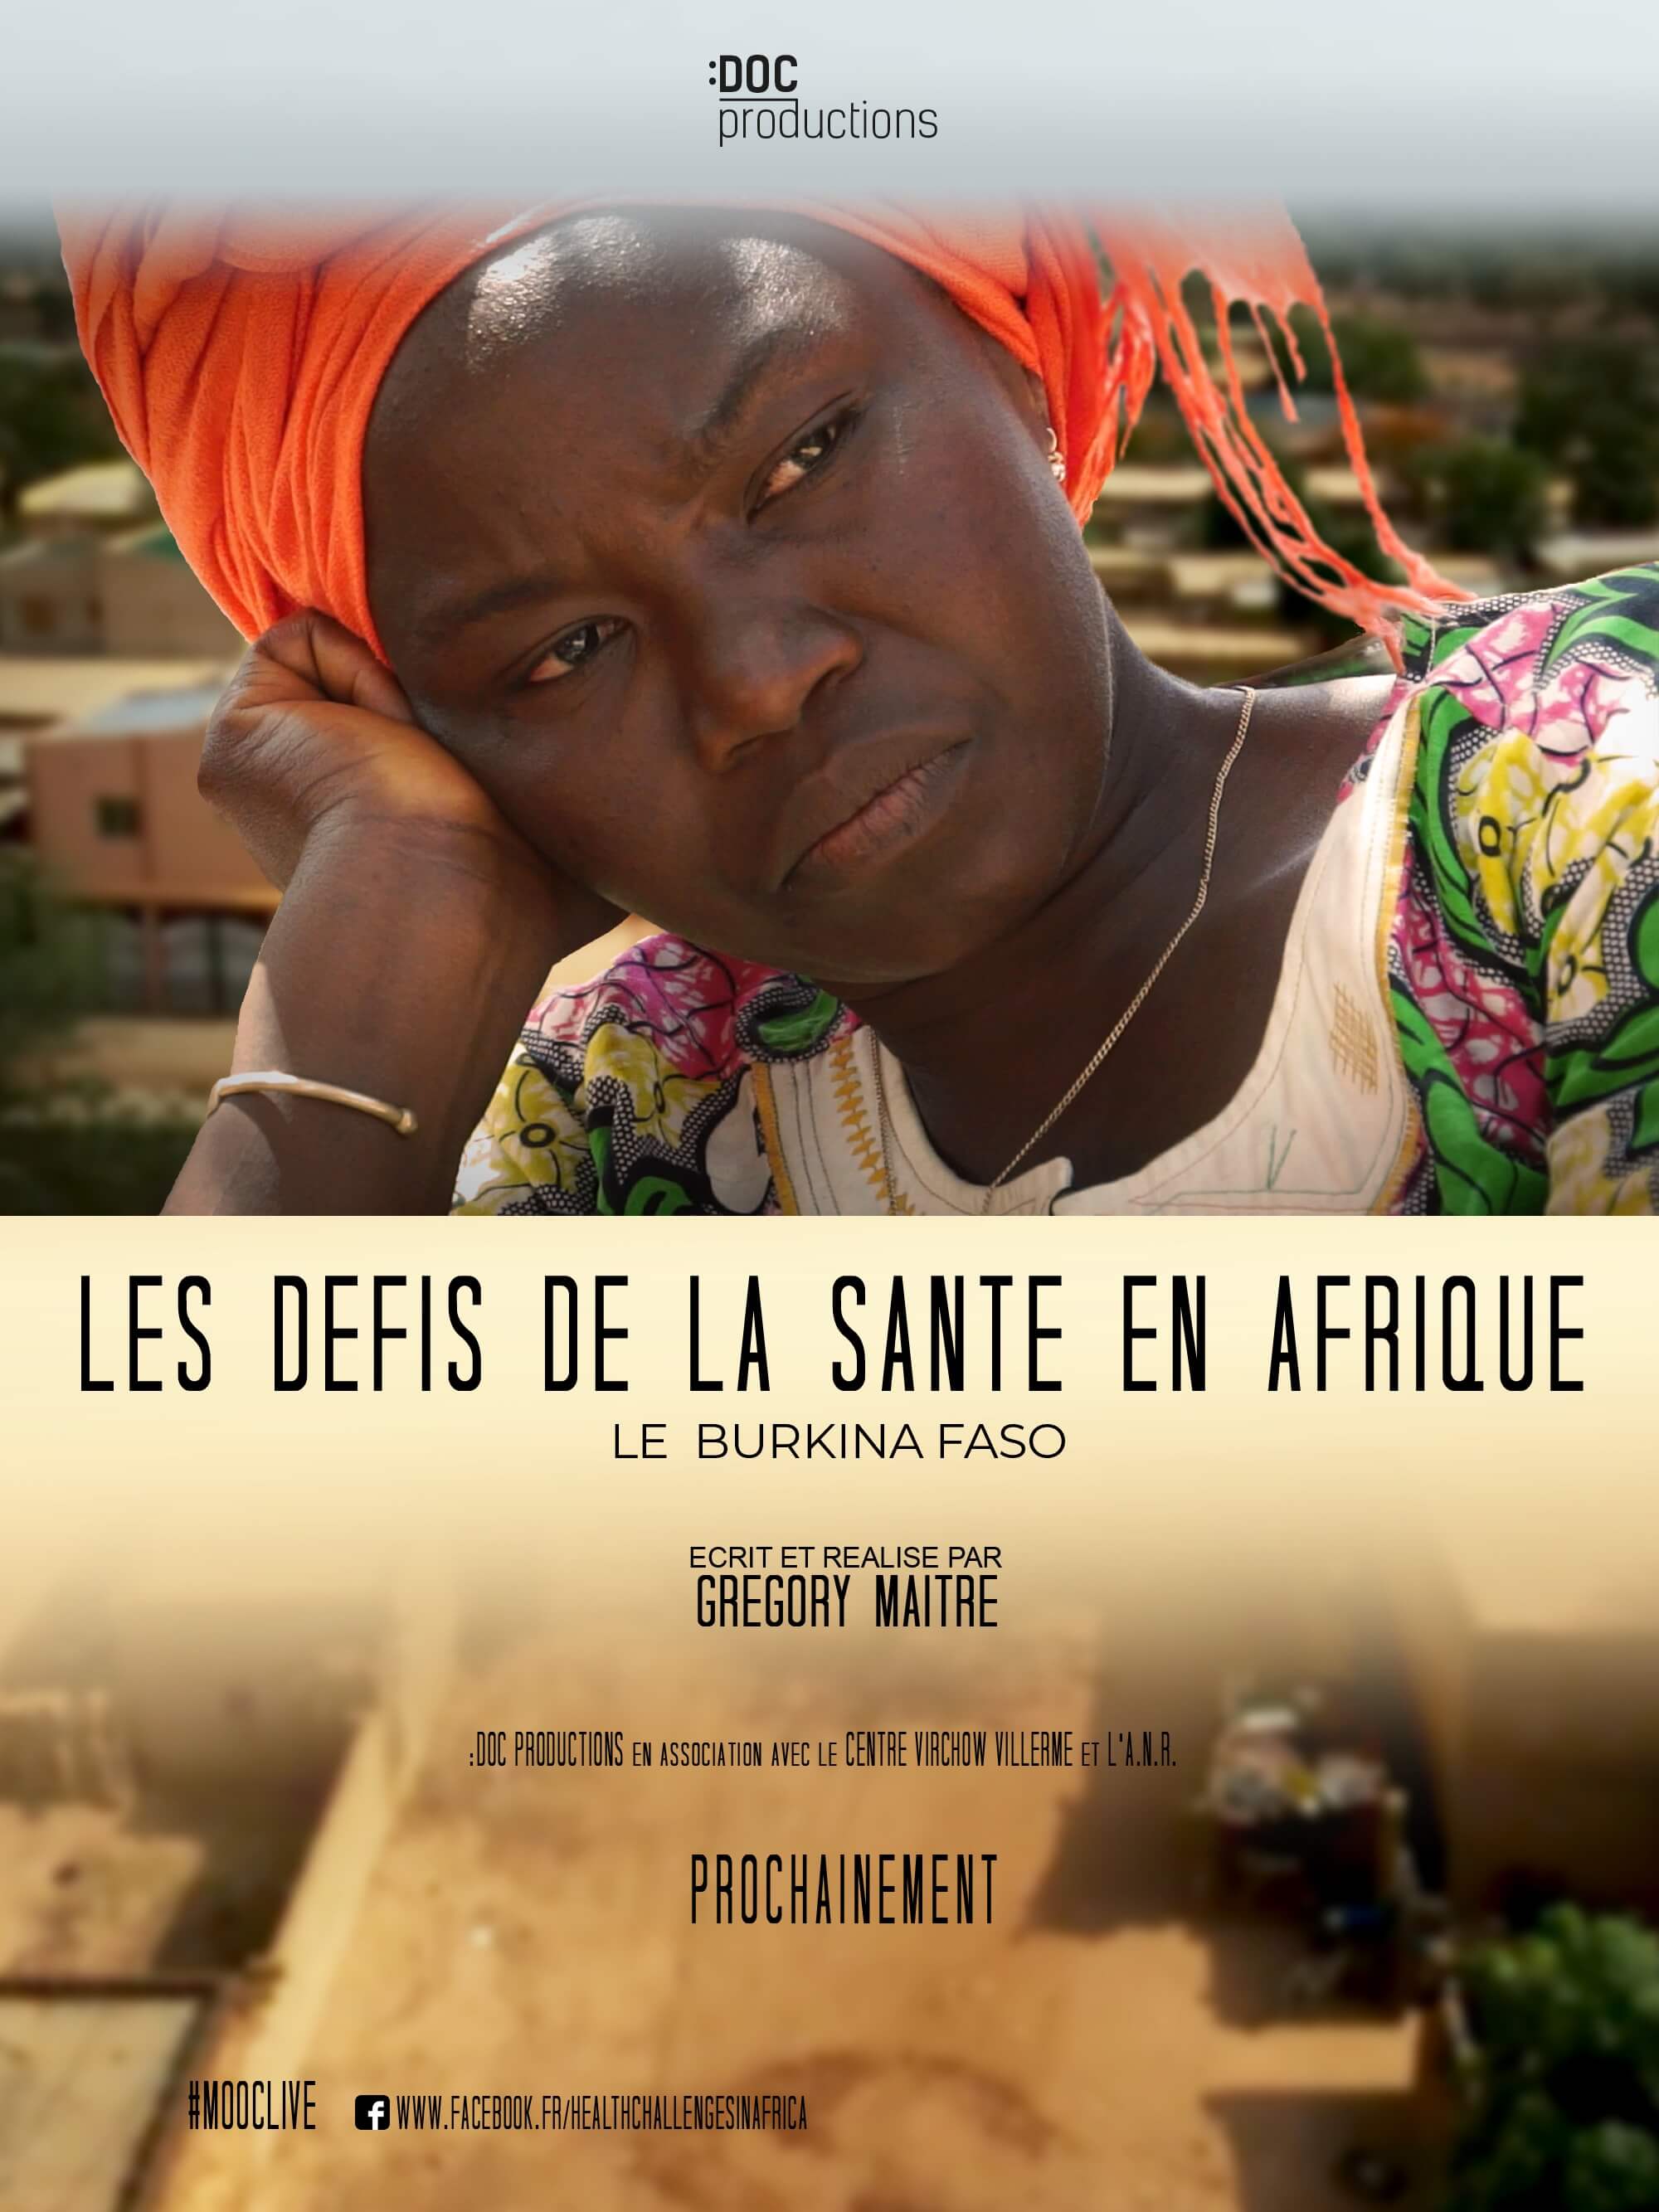 documentaire les défis de la santé en afrique burkina faso